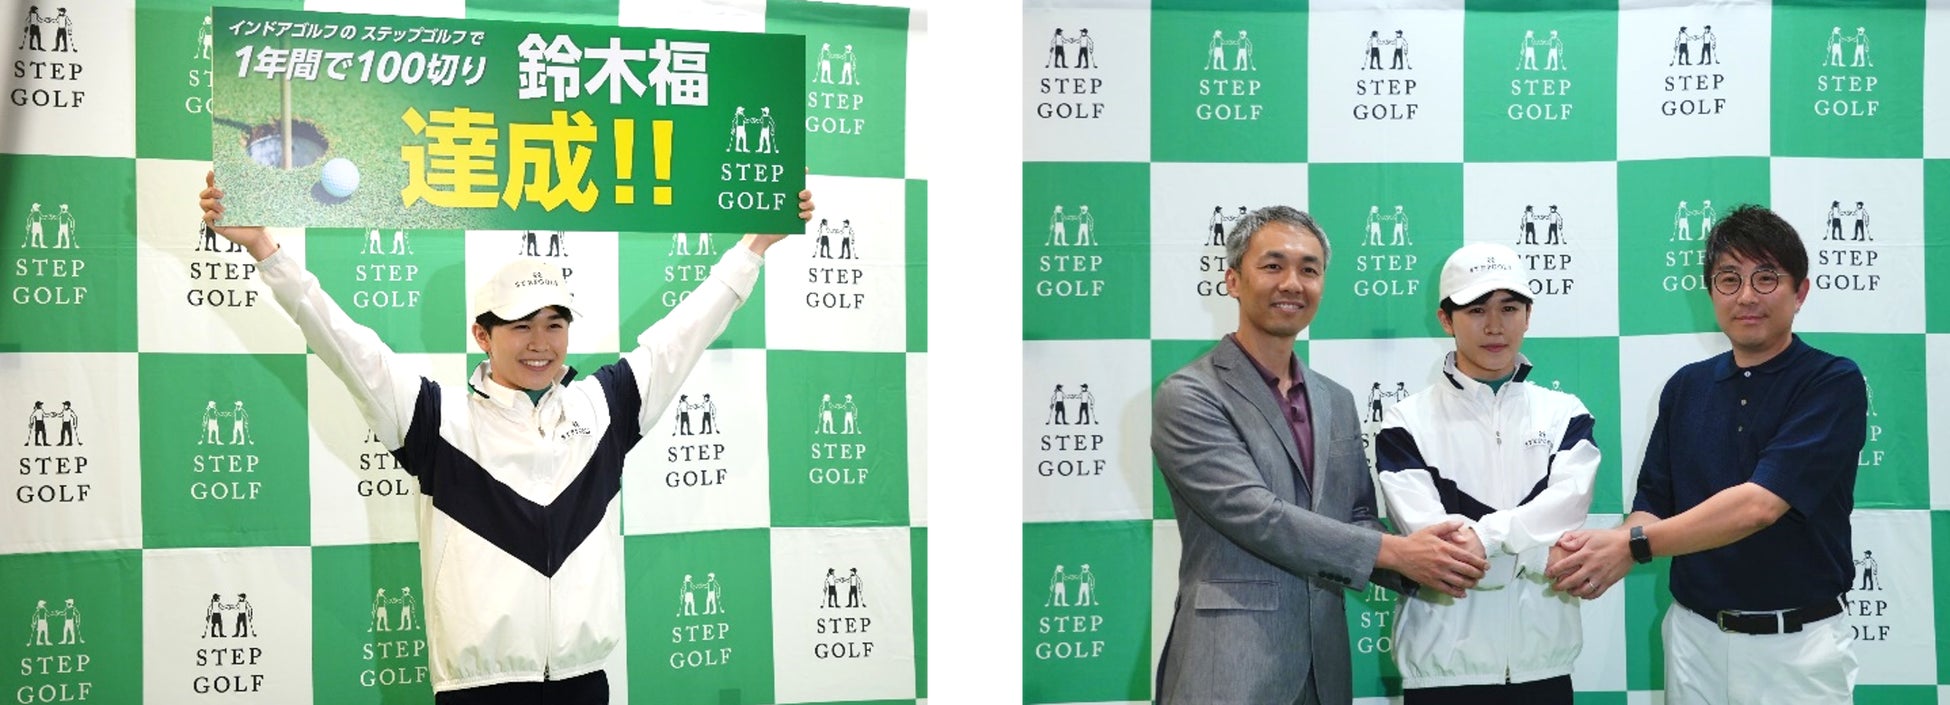 インドアゴルフスクール「ステップゴルフ」で挑戦した1年鈴木福くん　スコア91で100切り達成を発表！達成記念のキャンペーン7月5日から開始